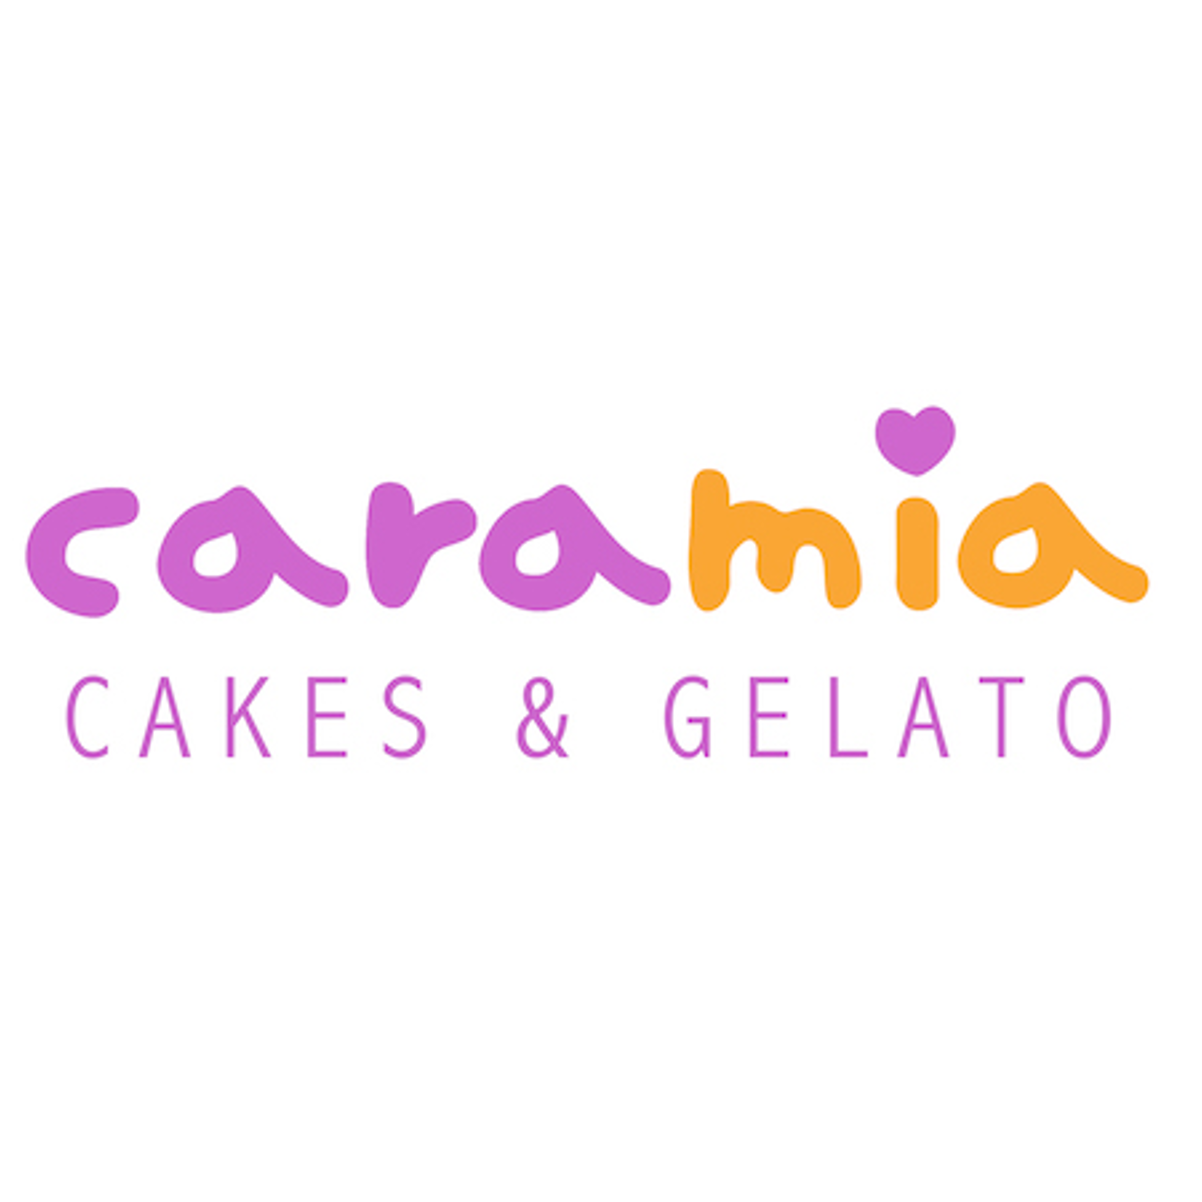 Caramia Cake & Gelatos